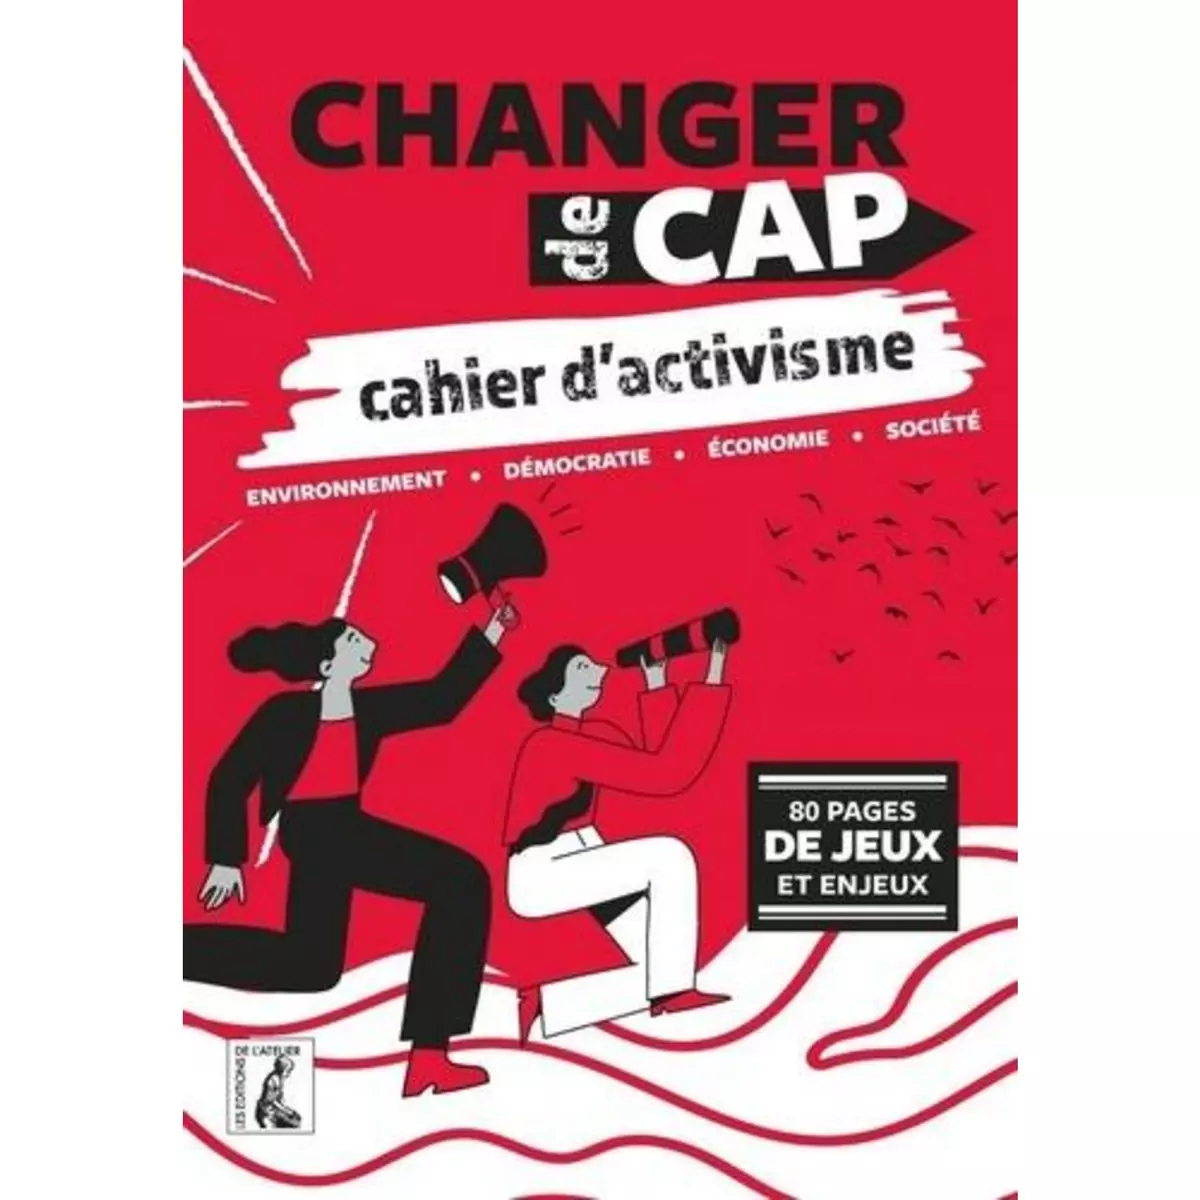  CHANGER DE CAP. CAHIER D'ACTIVISME, Editions de l'Atelier